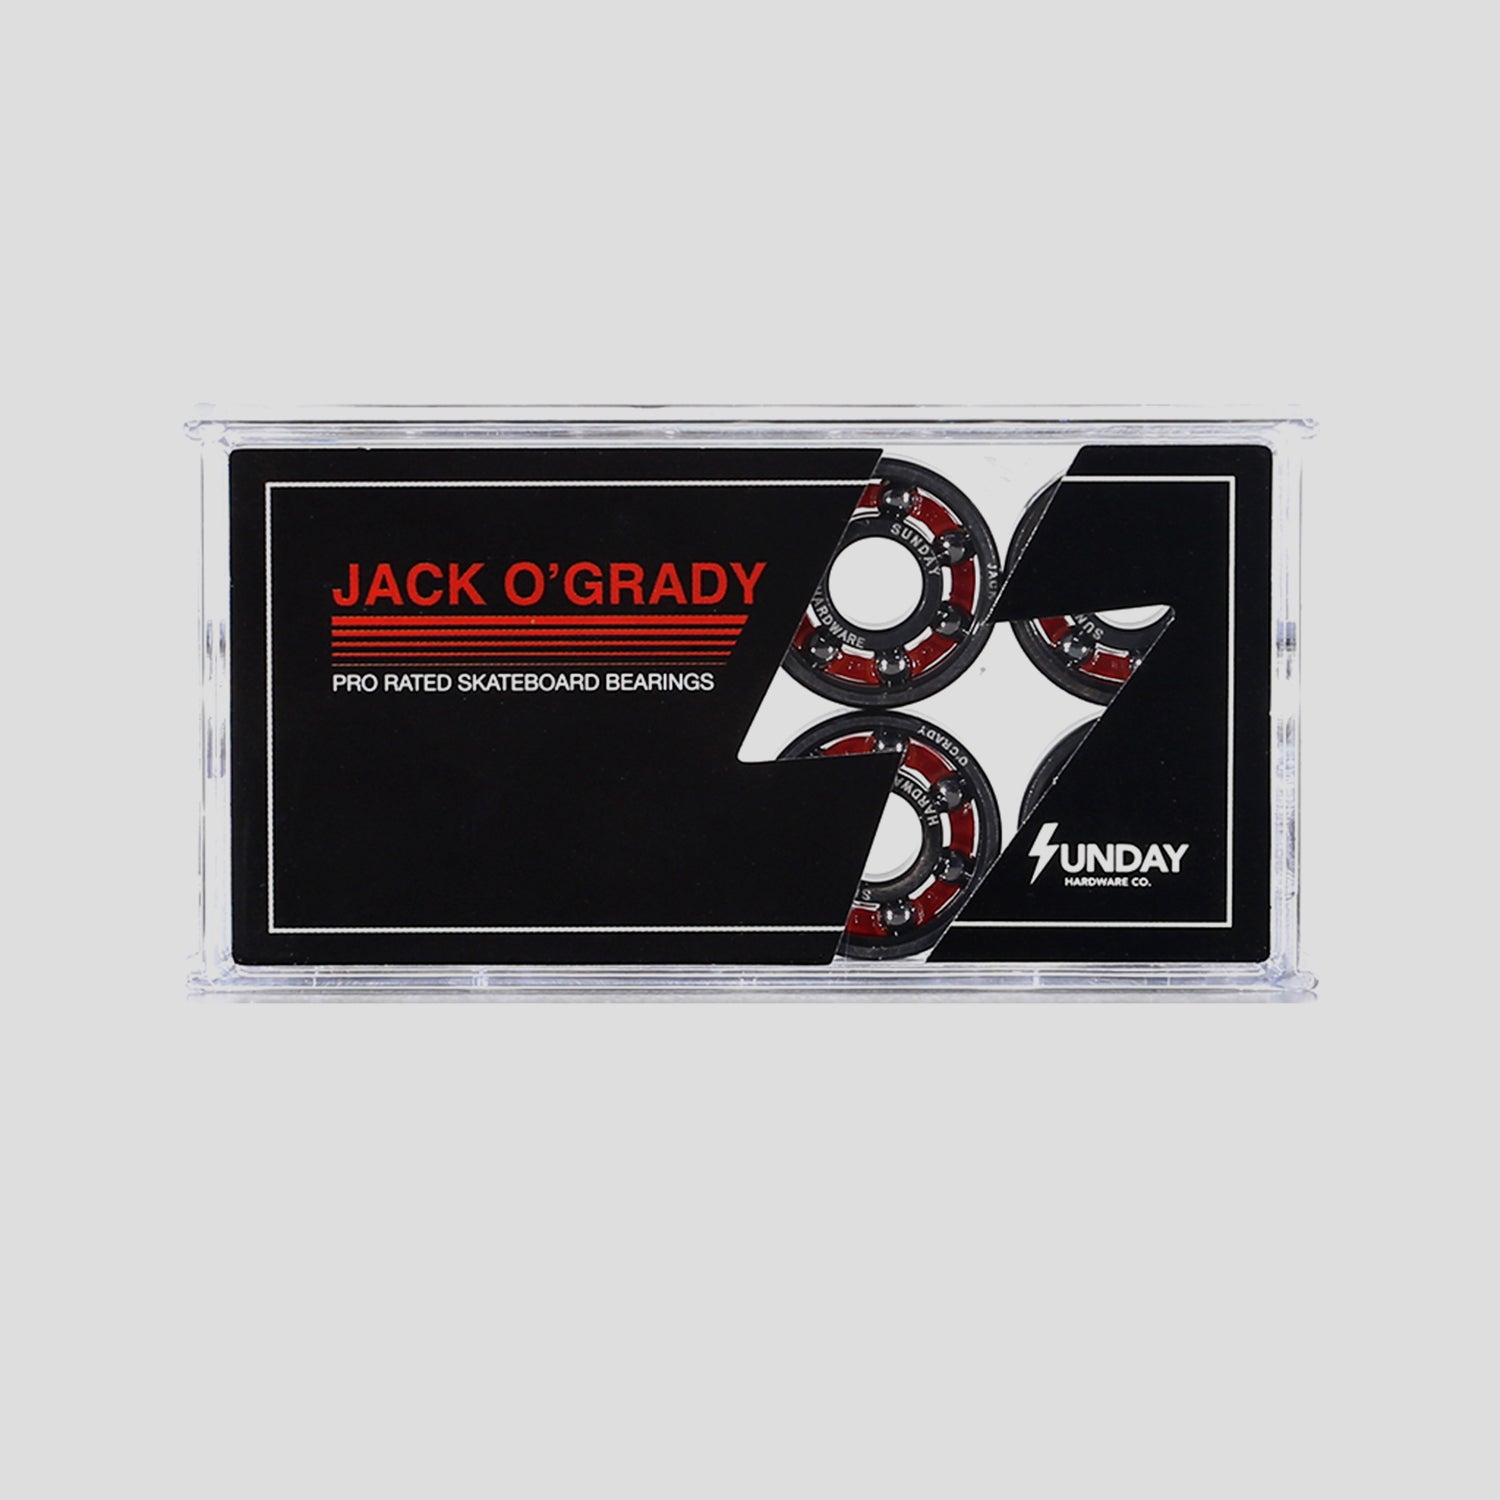 SUNDAY HARDWARE JACK O'GRADY PRO RATED SHIELDLESS BEARINGS